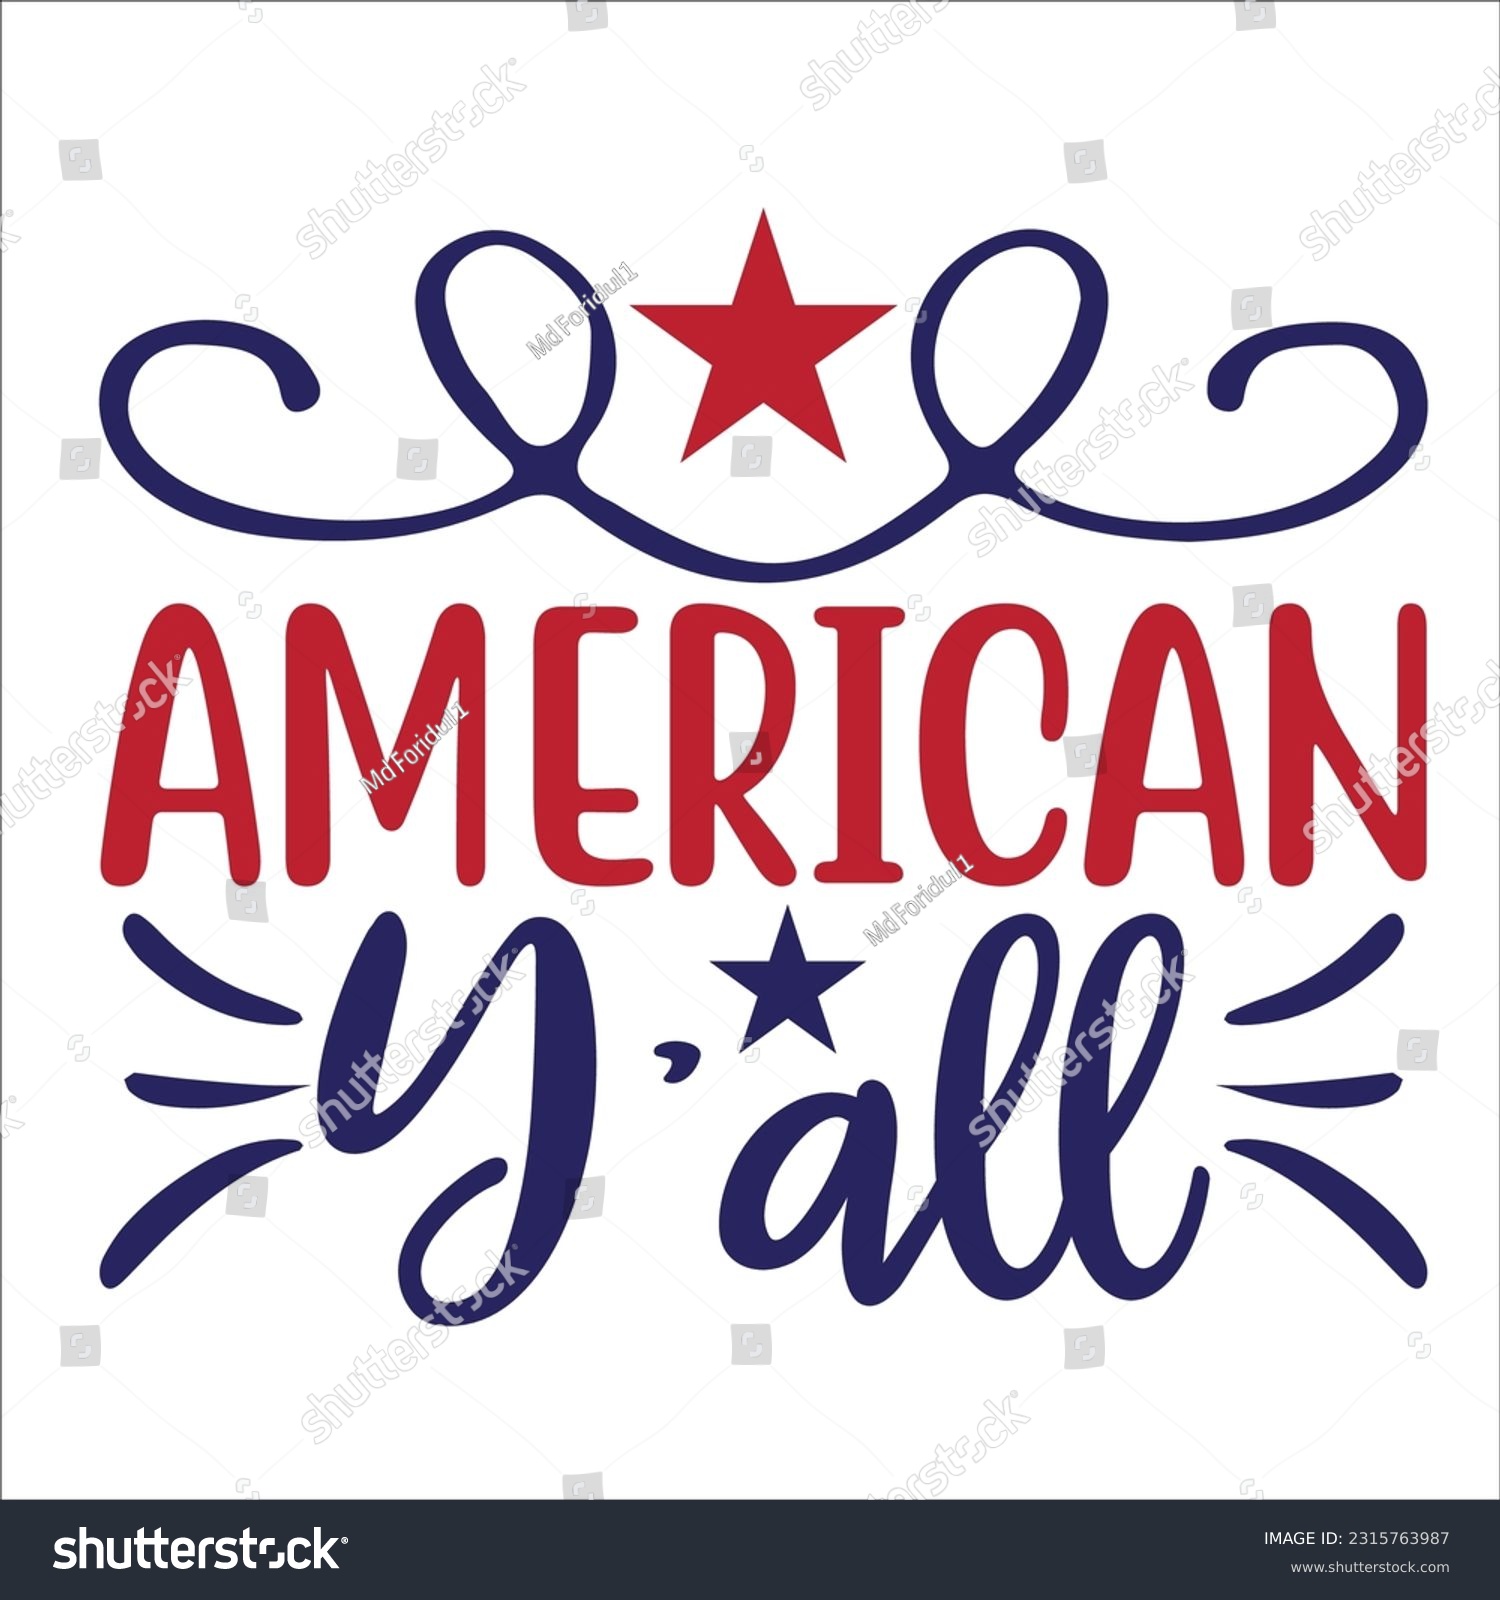 SVG of 4th of July SVG America svg USA Flag svg Patriotic Independence Day Shirt svg